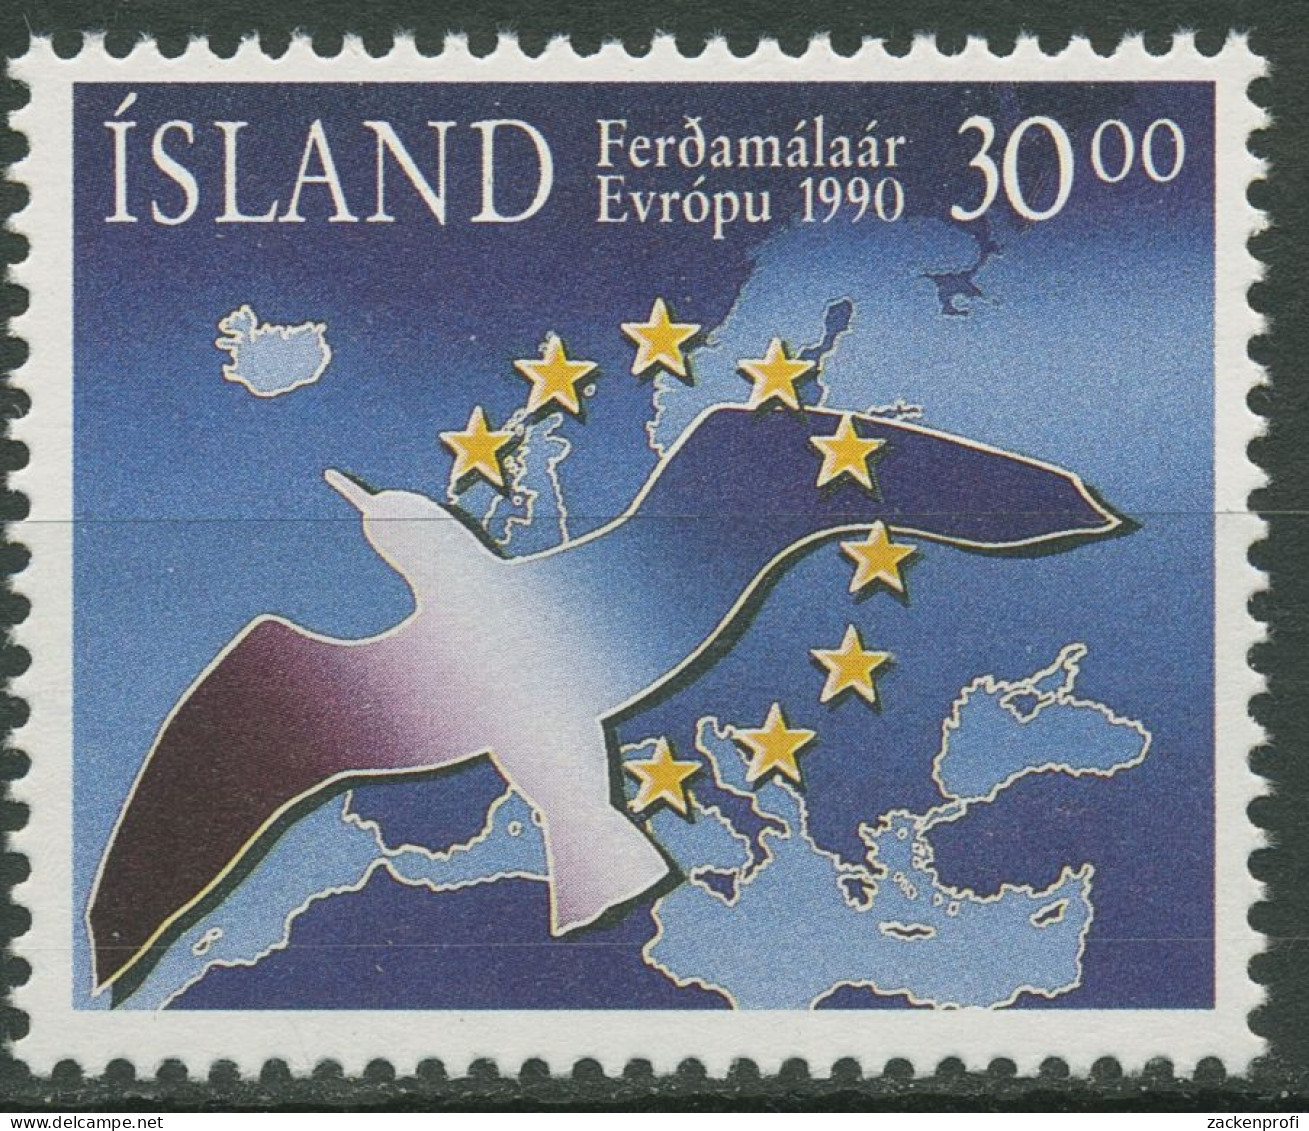 Island 1990 Tourismus Landkarte Europas Vögel 730 Postfrisch - Ungebraucht